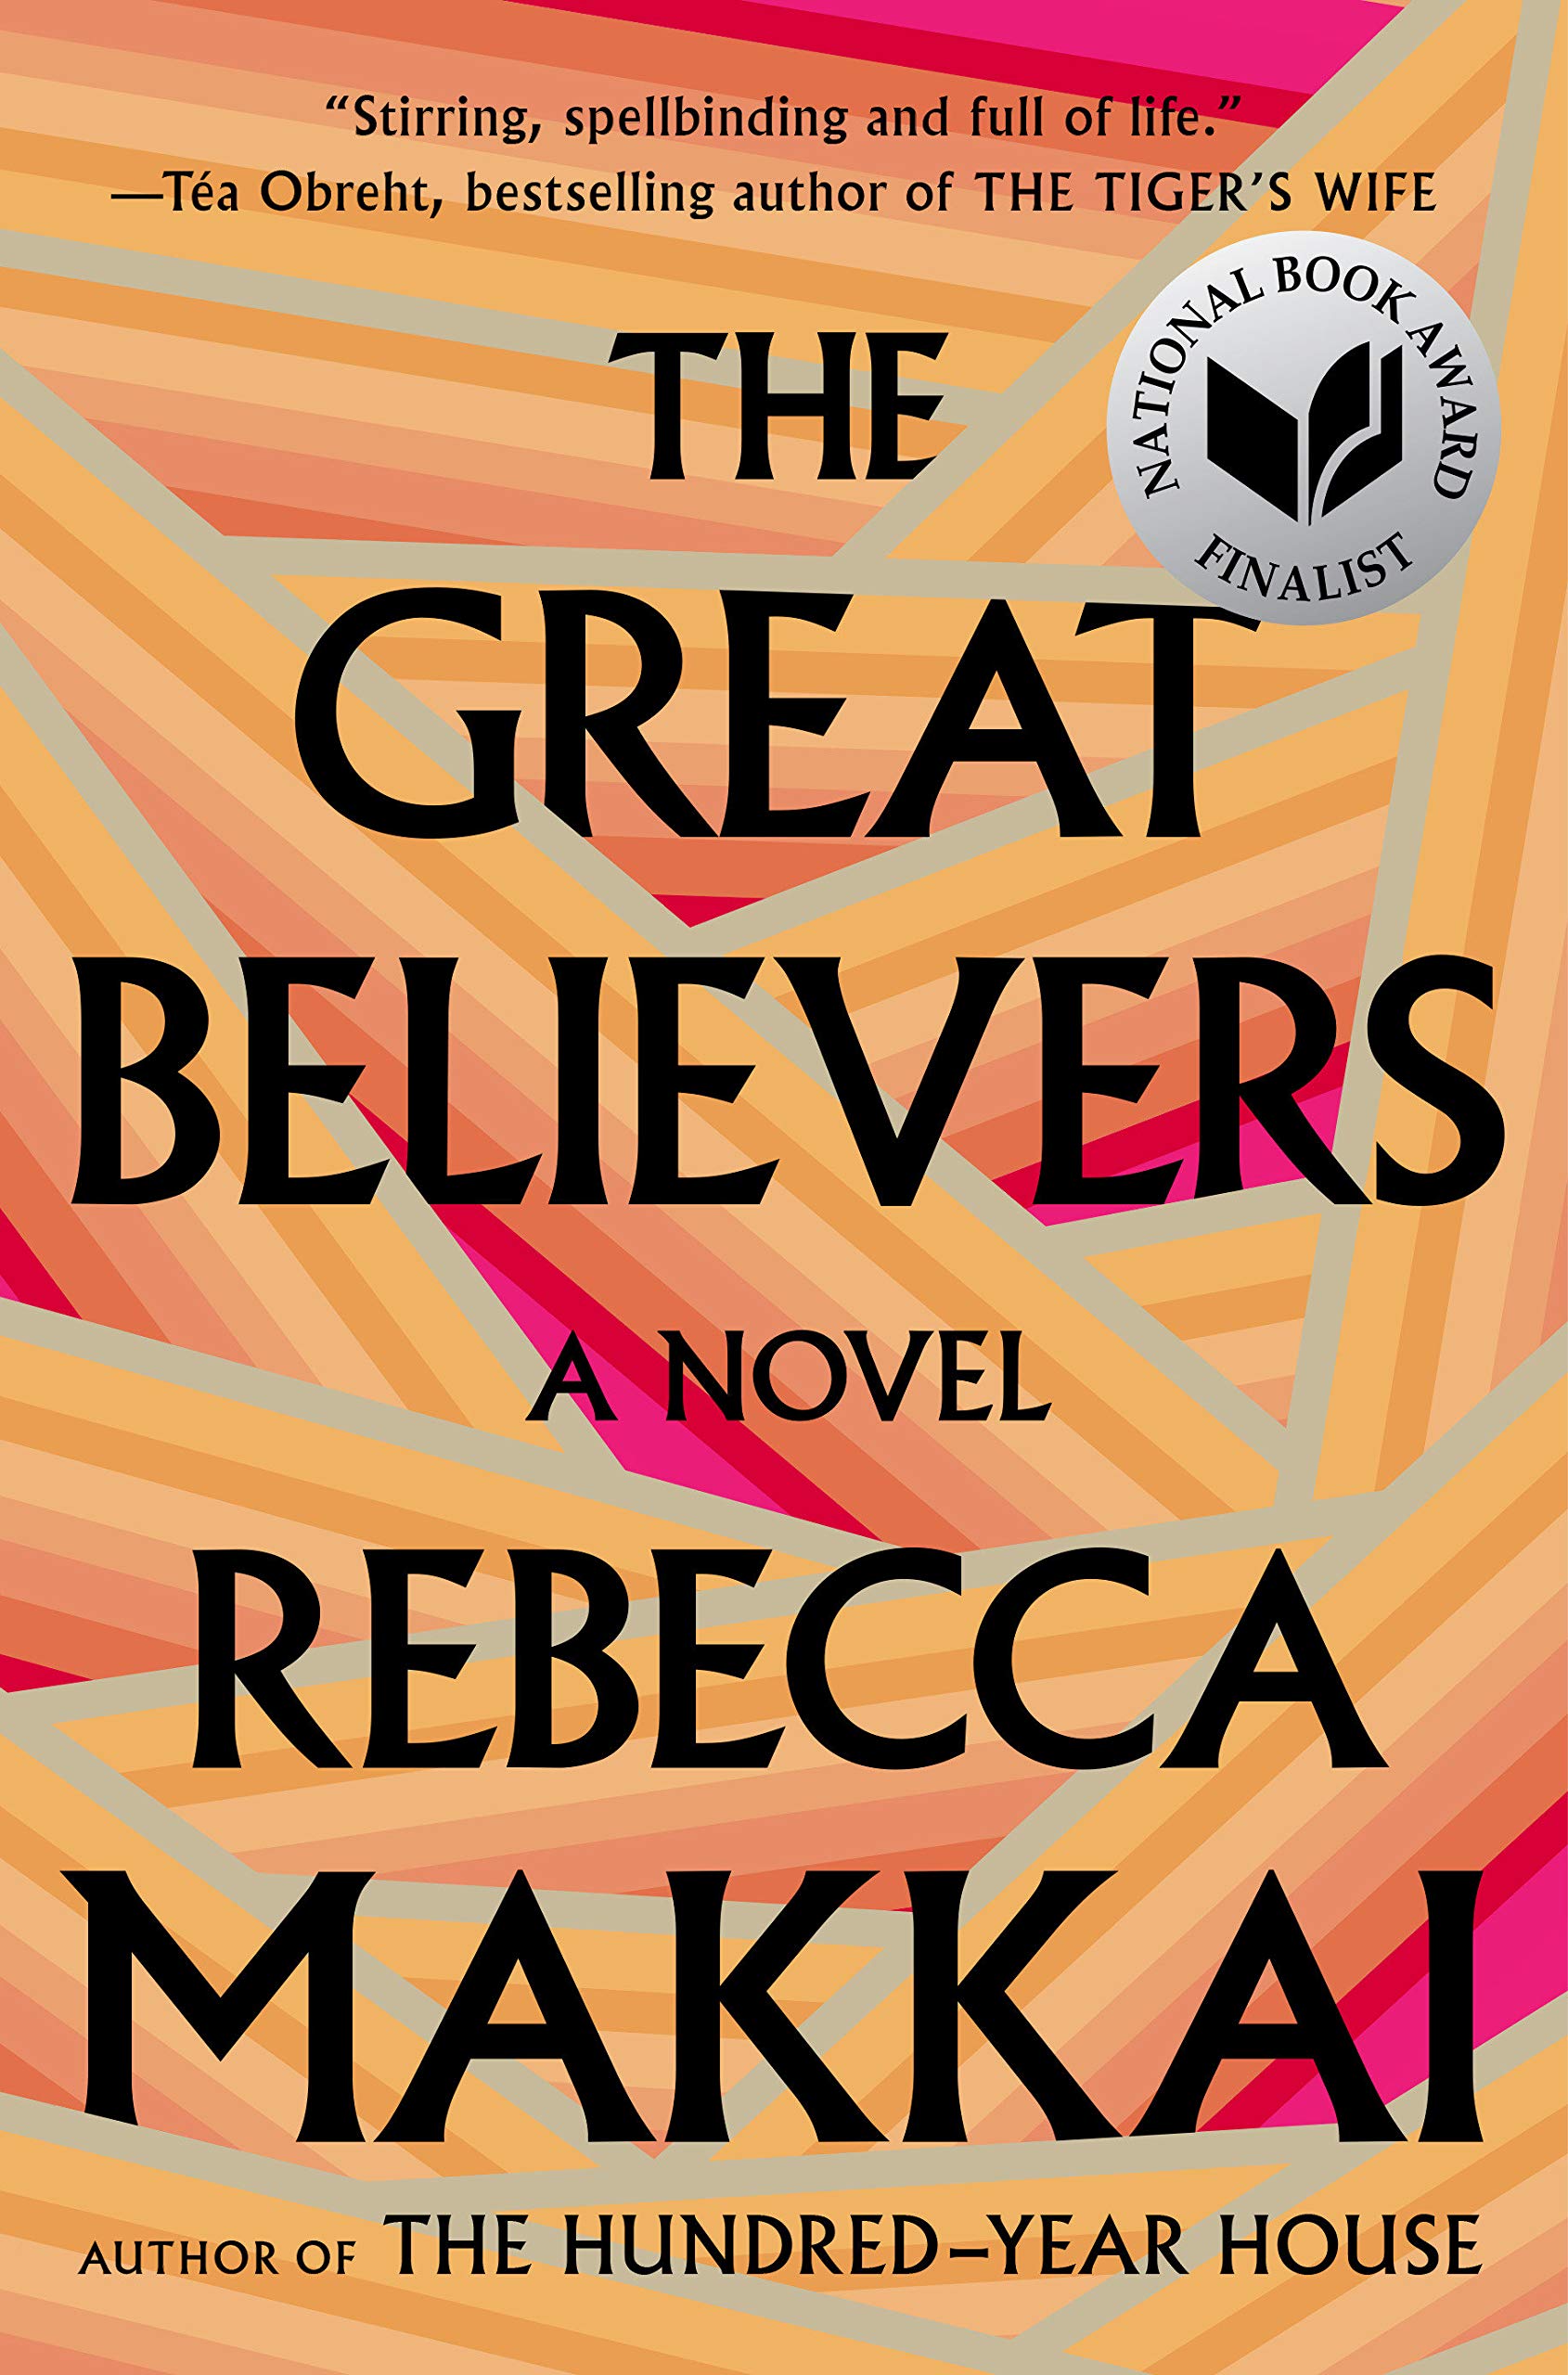 "The Great Believers" by Rebecca Makkai